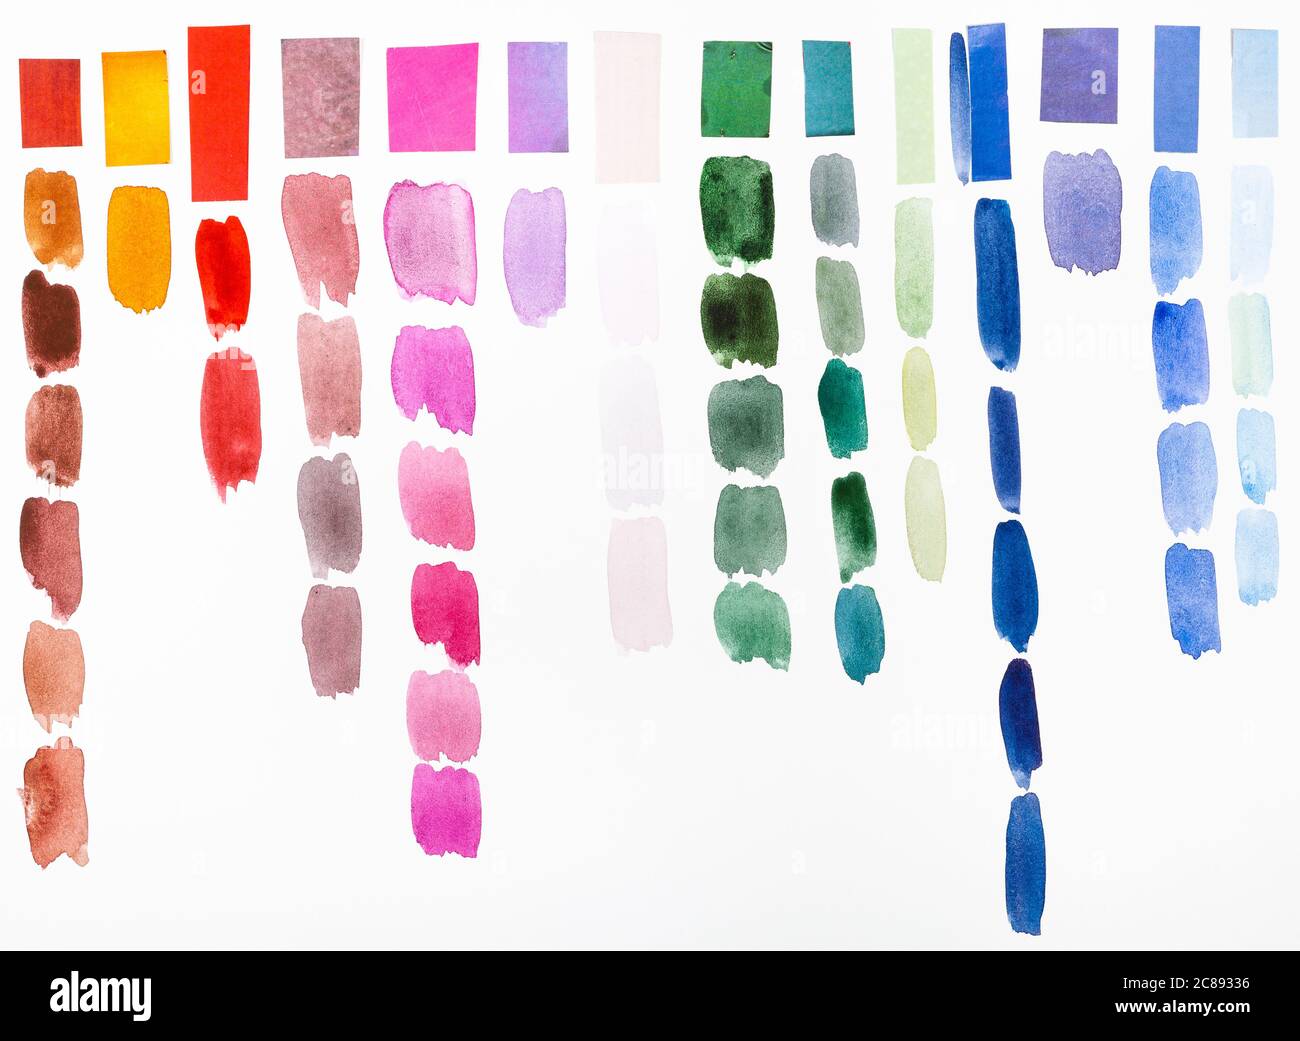 Training Zeichnung auf verschiedenen Farben der gleichen Farbe Hand mit Aquarell-Farben auf weißem Strukturpapier gemalt Stockfoto